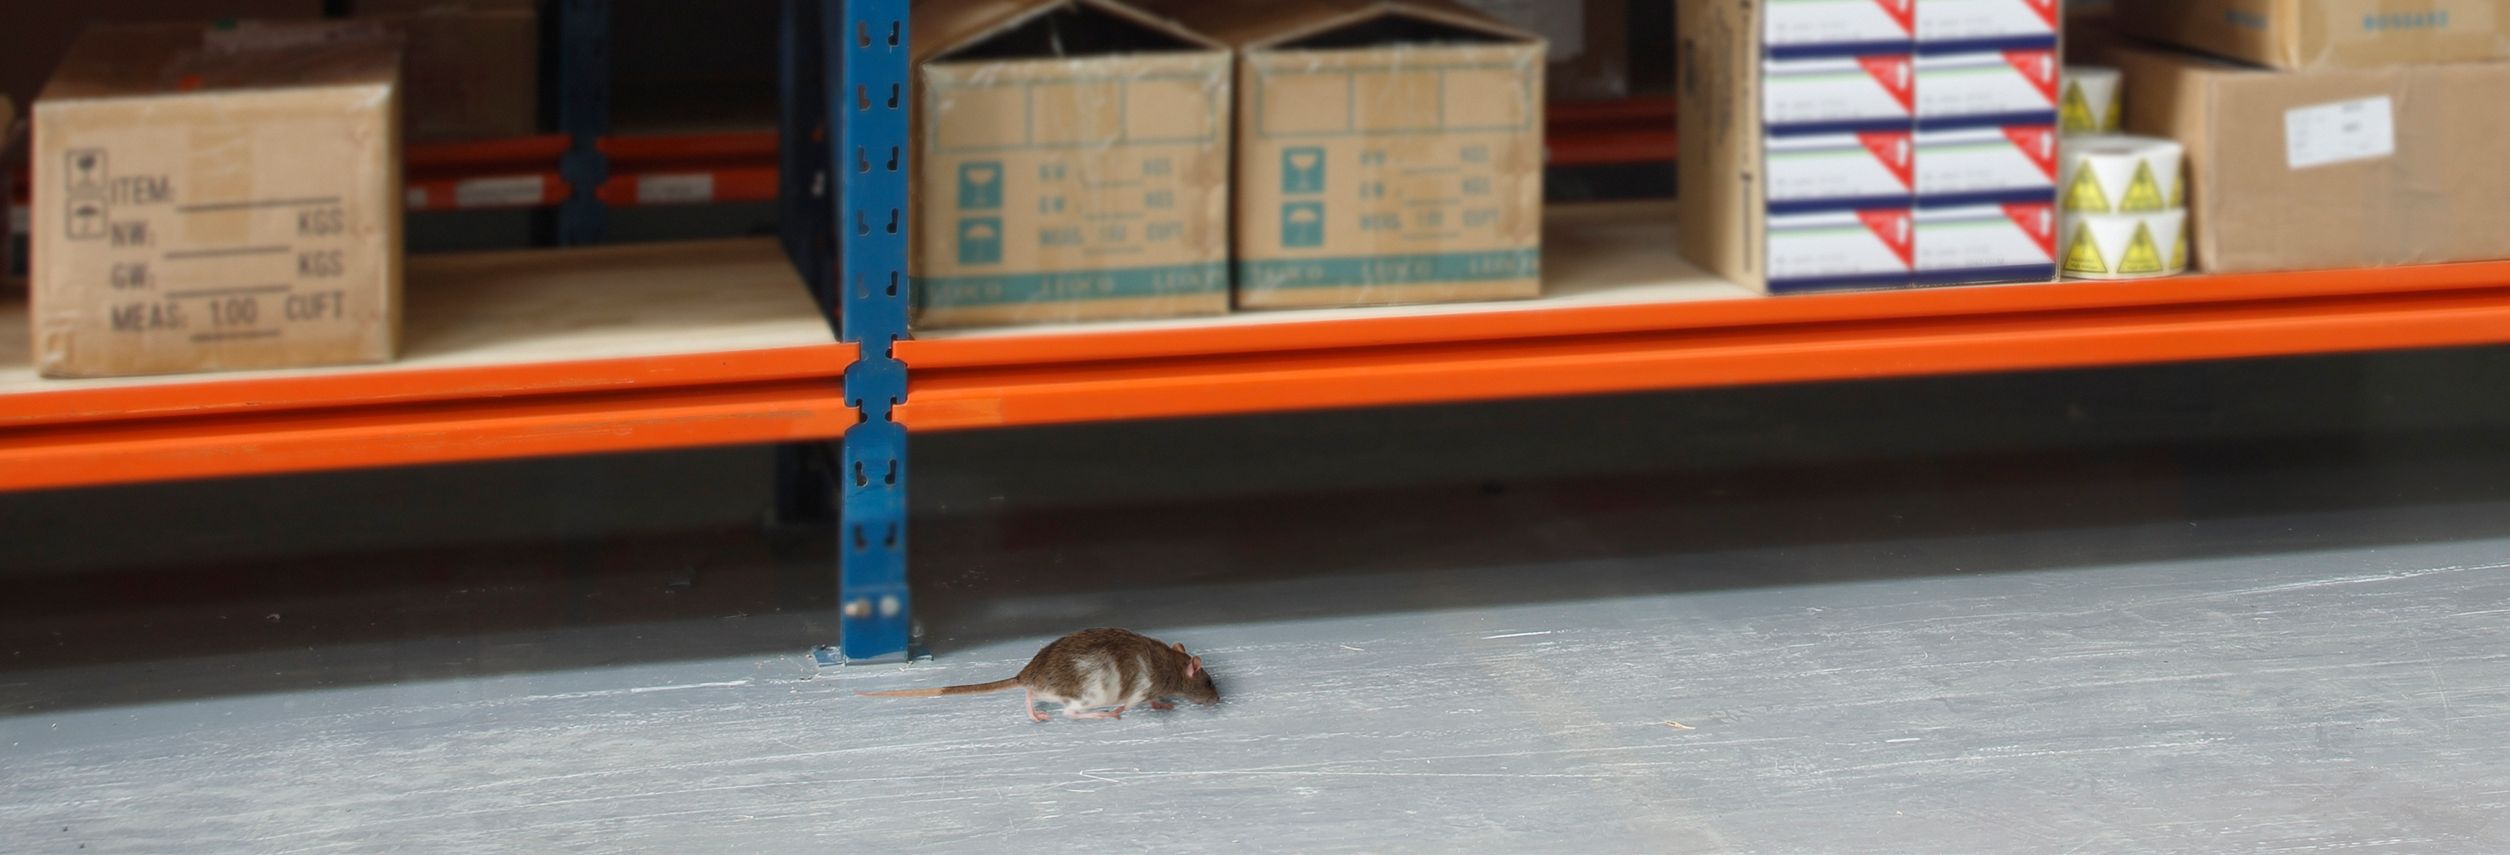 Son efectivos los ultrasonidos contra los ratones?